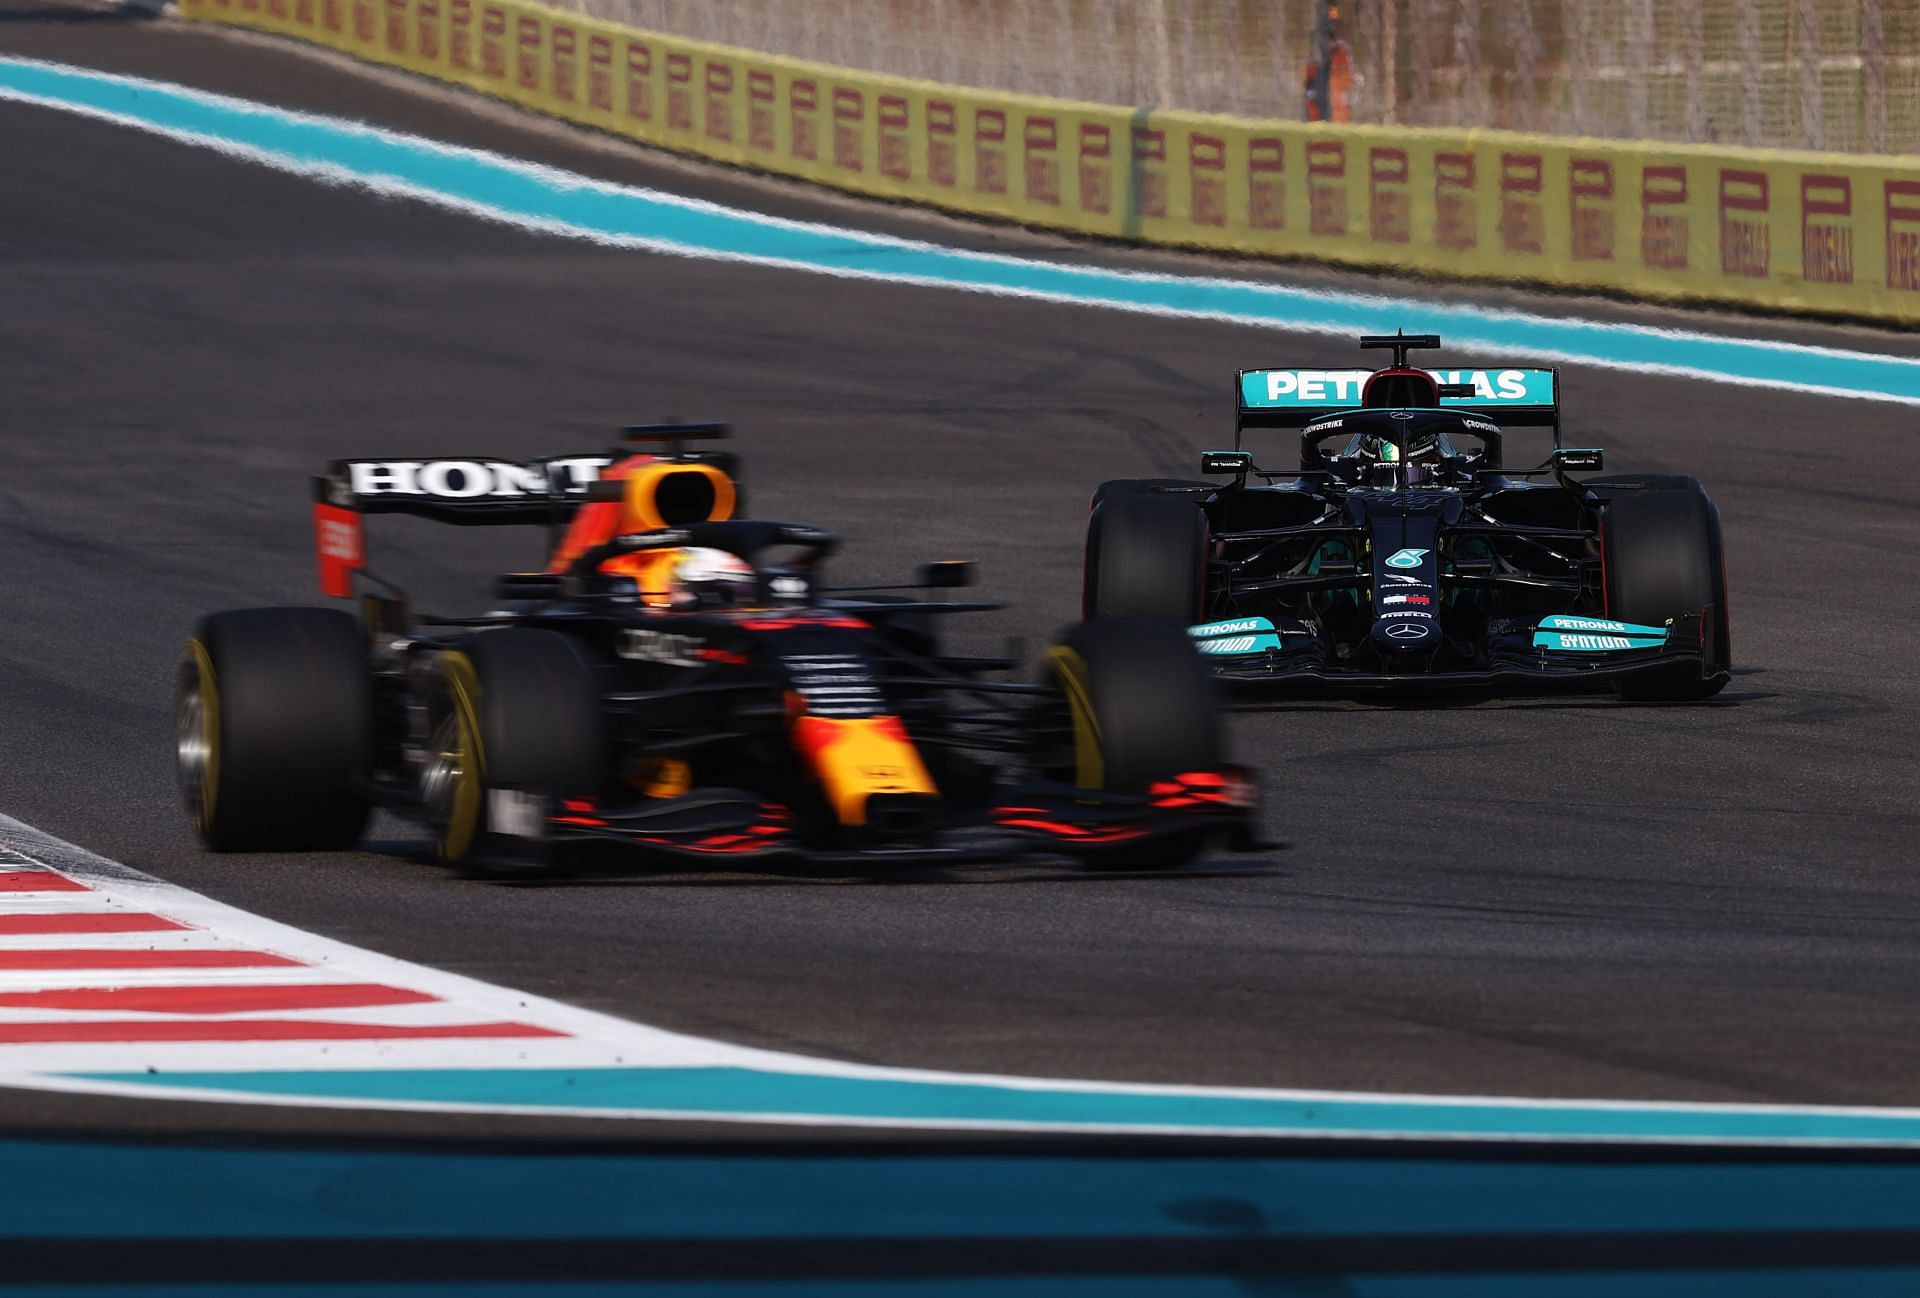 F1 Grand Prix of Abu Dhabi - Red Bull and Mercedes